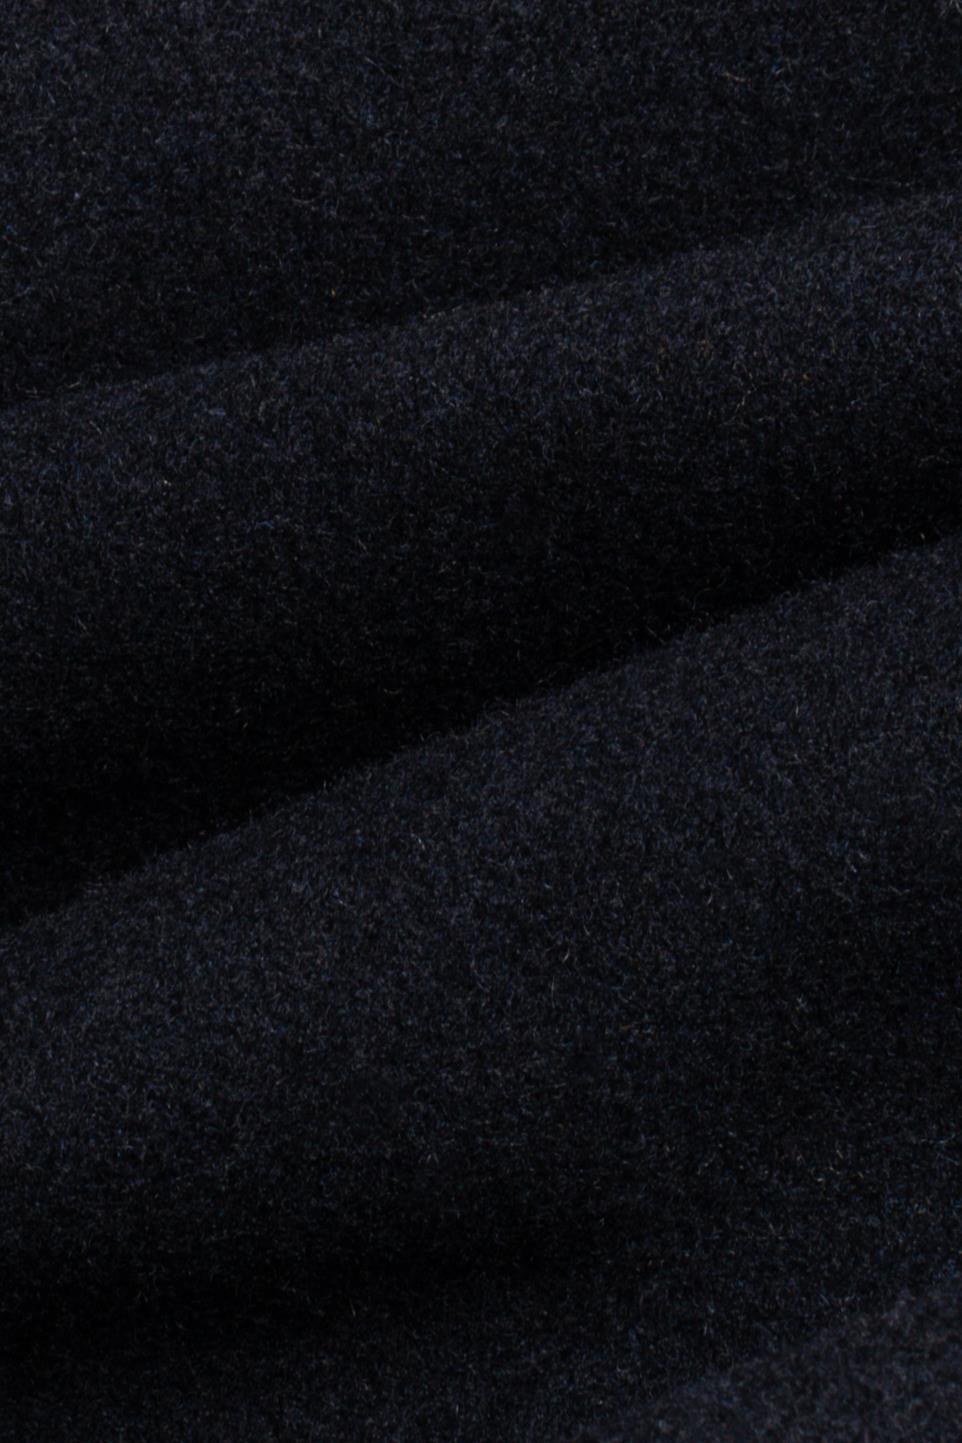 Michigan navy long coat fabric swatch